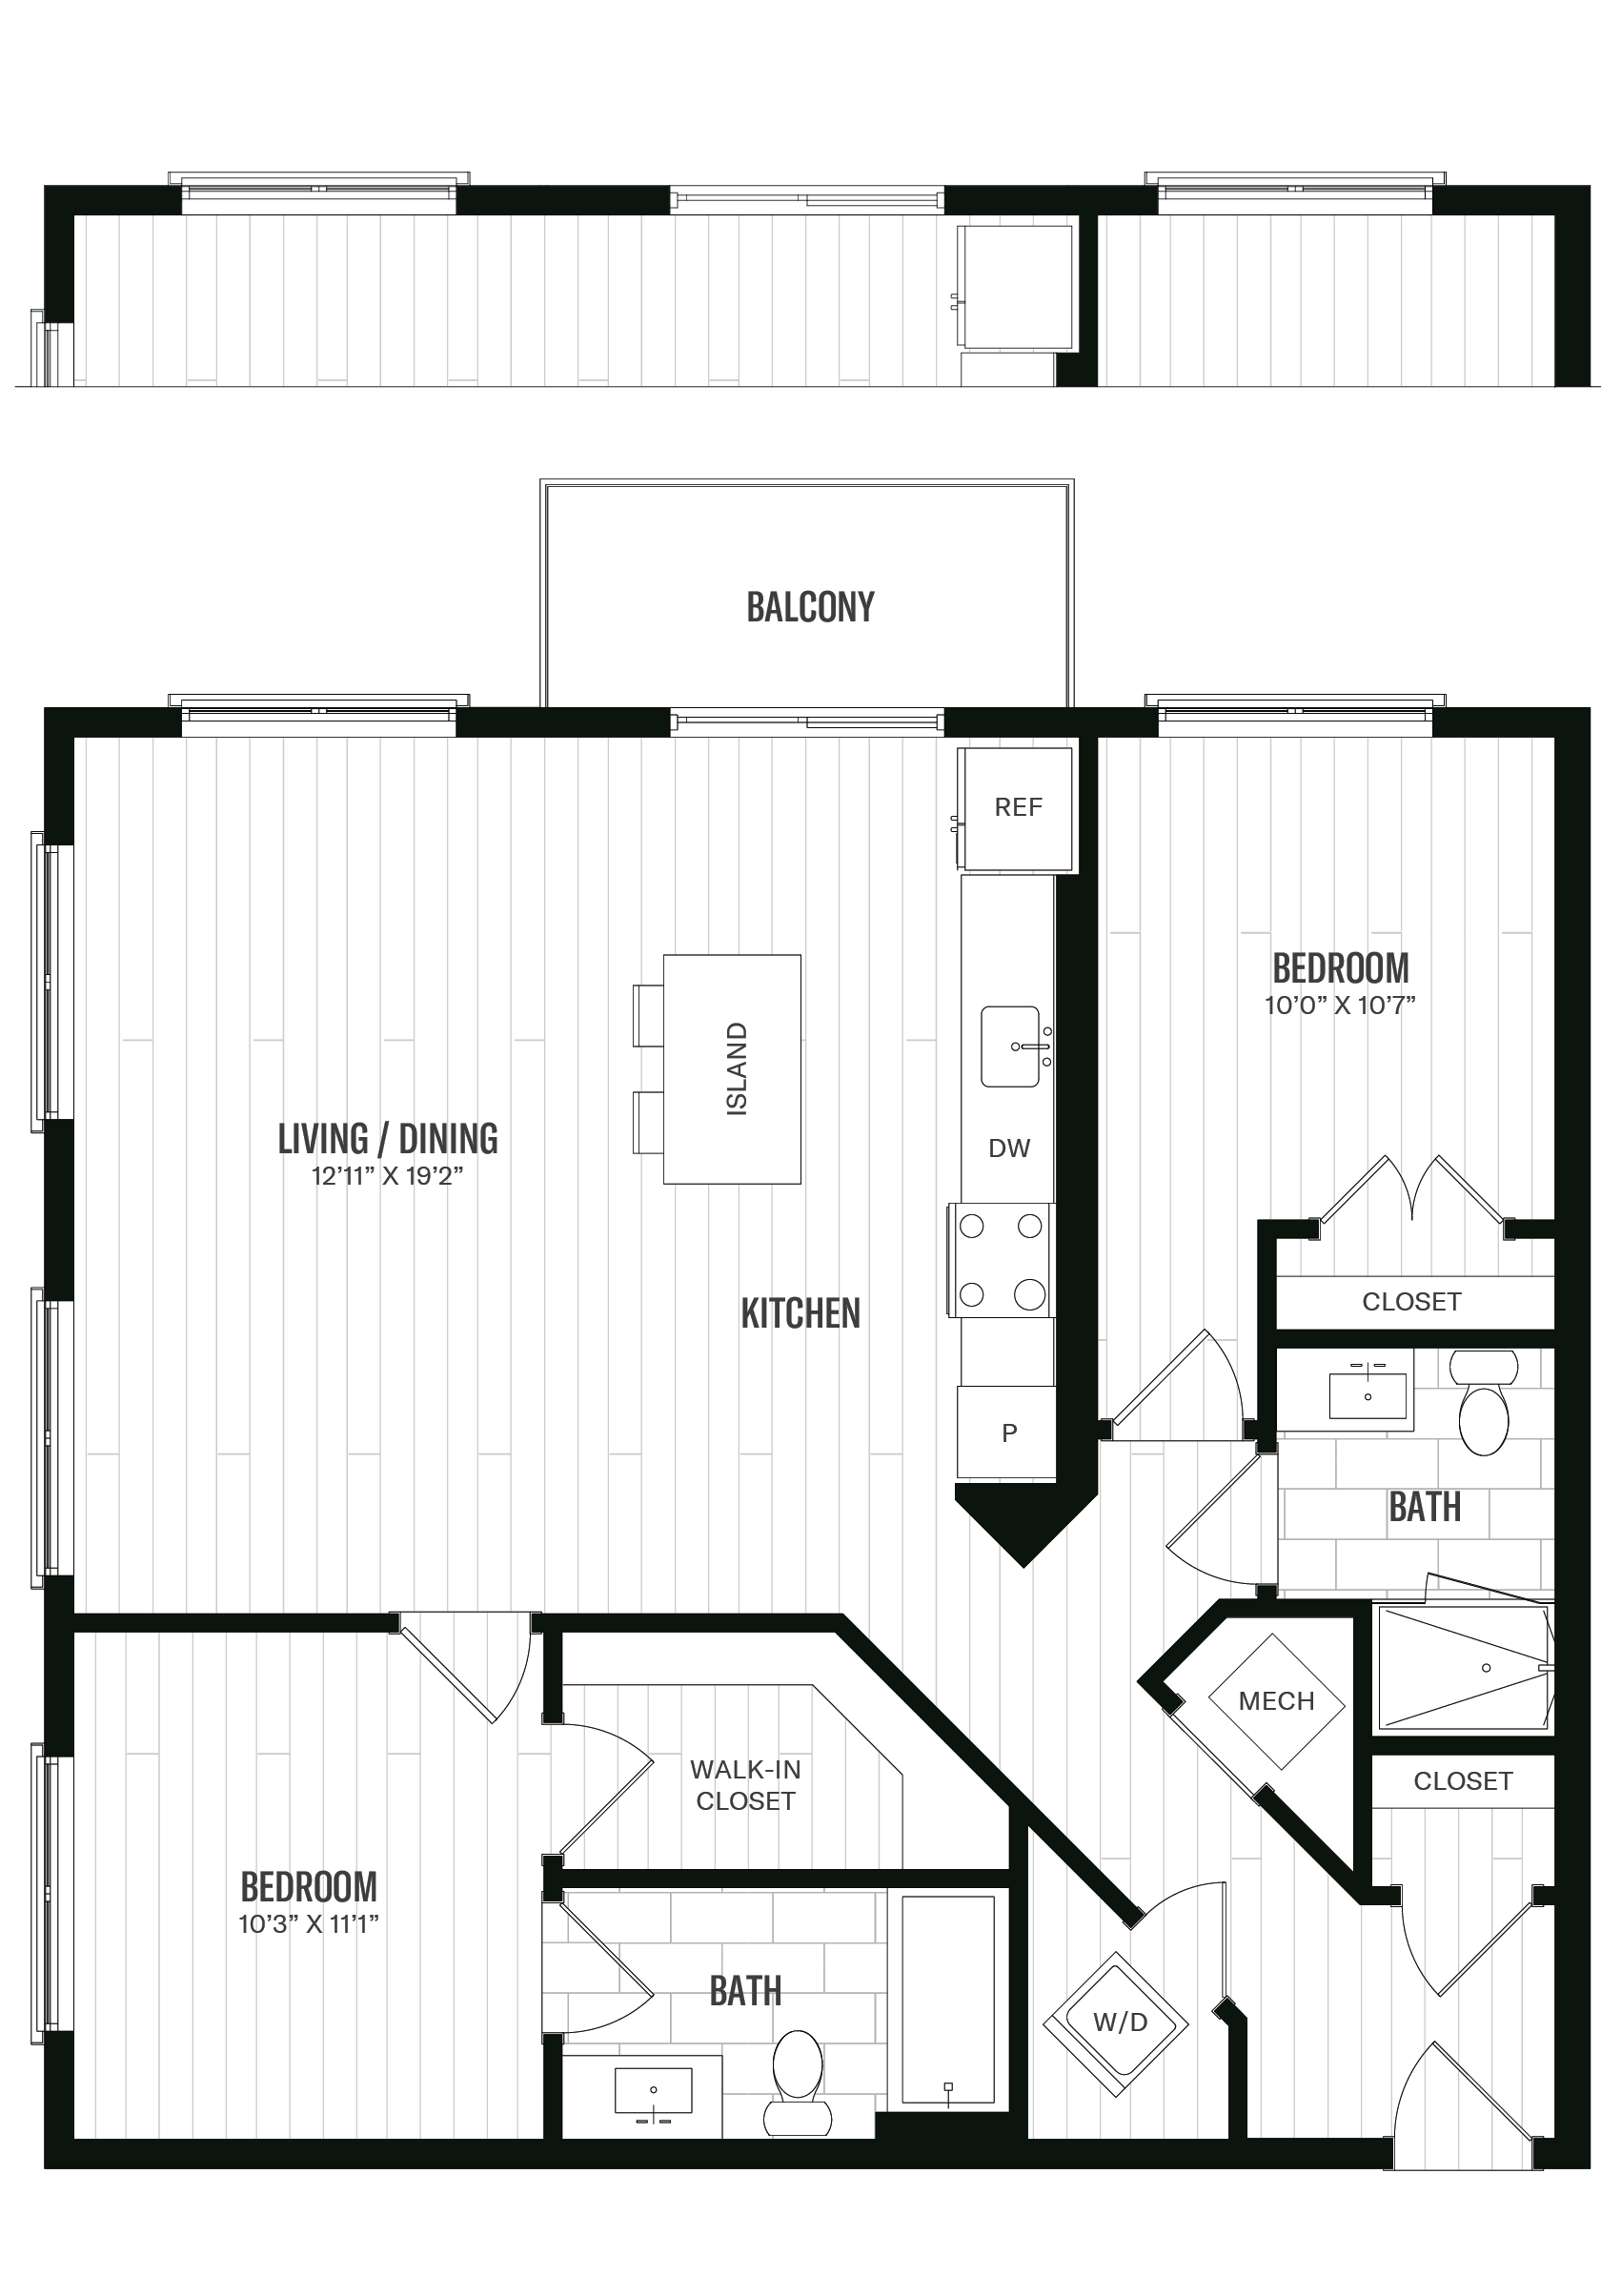 Floorplan image of unit 536